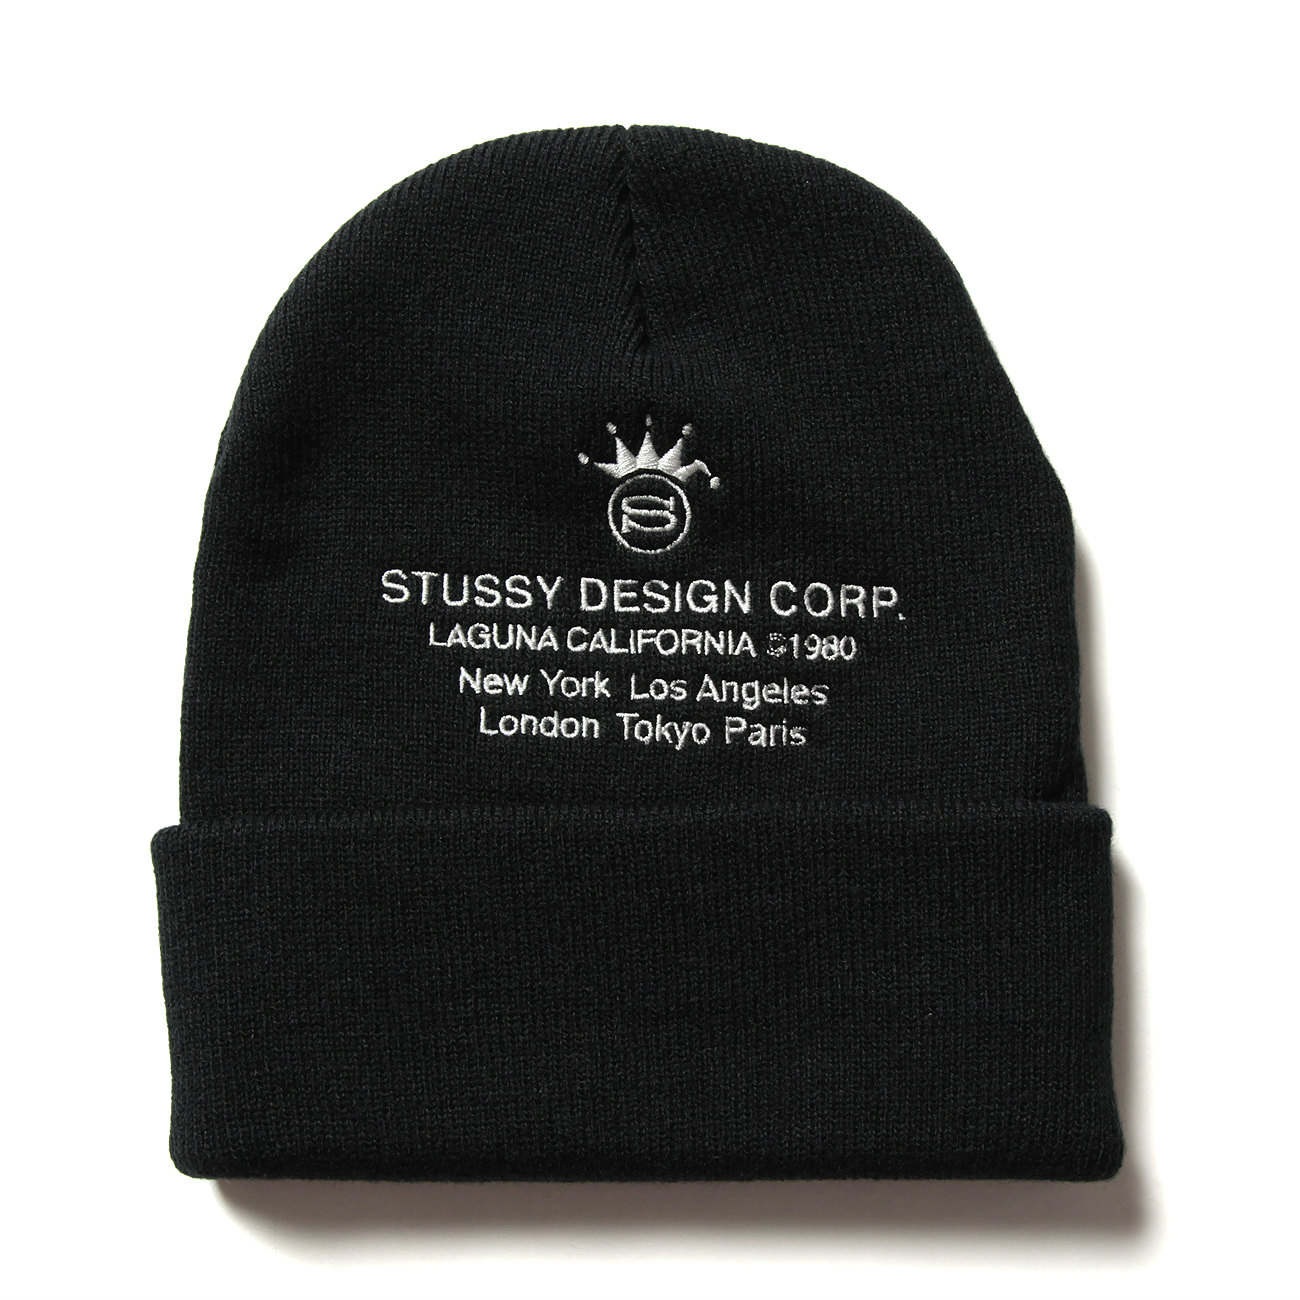 Design Corp Cuff Beanie - Black